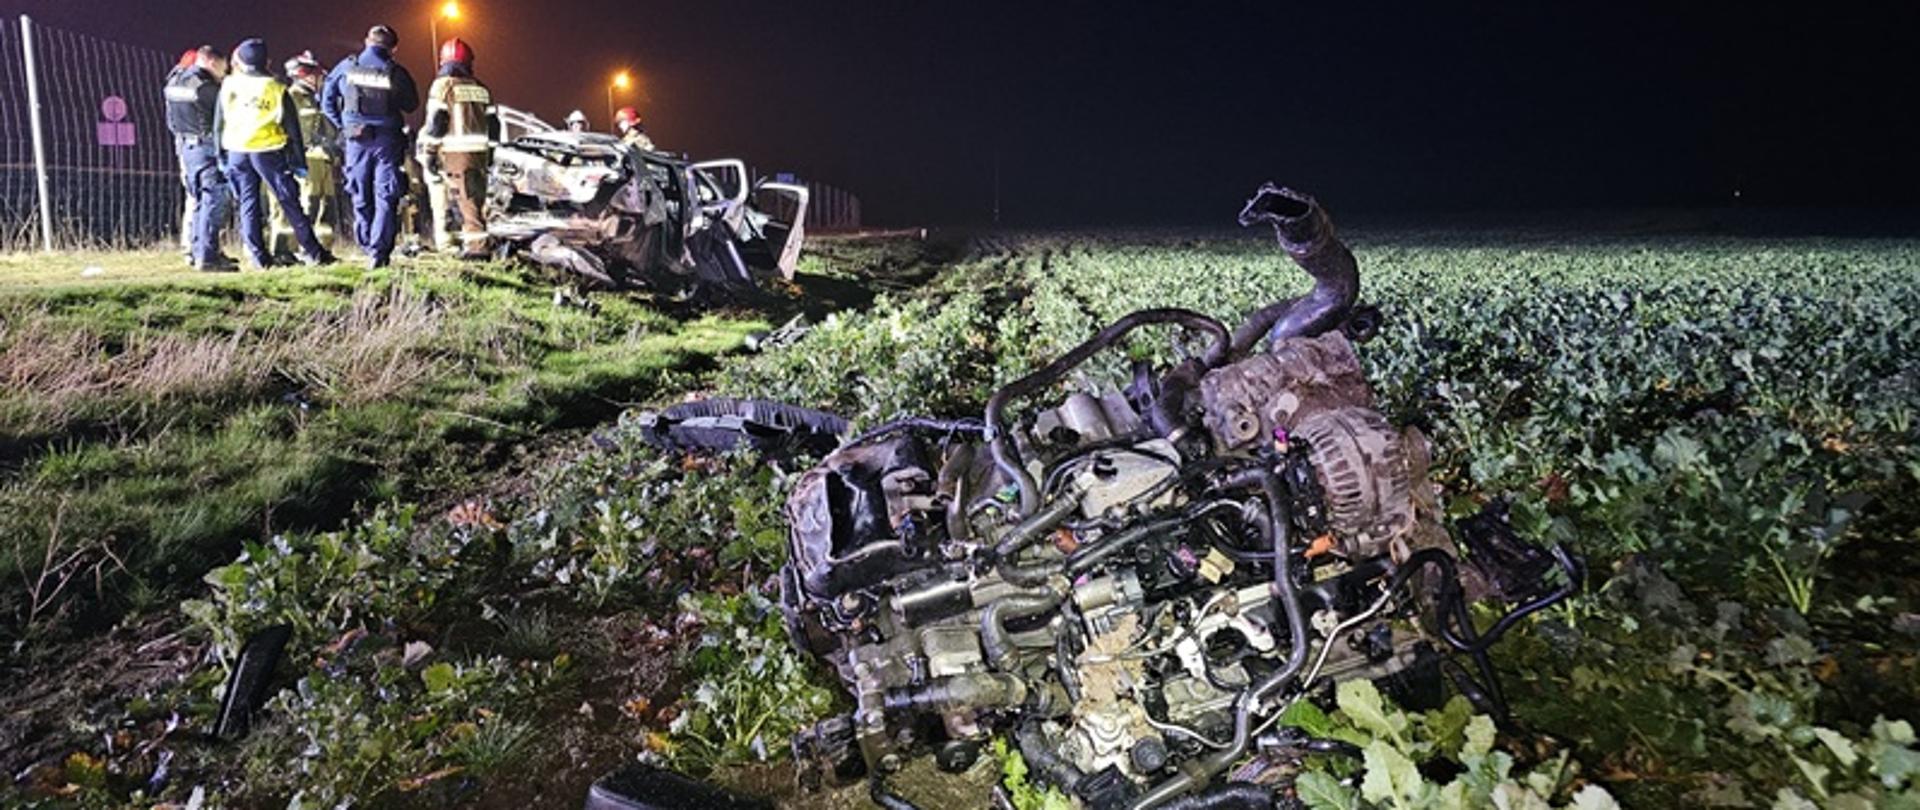 Wypadek drogowy na DK41 obwodnica Nysy w okolicach miejscowości Wyszków Śląski.